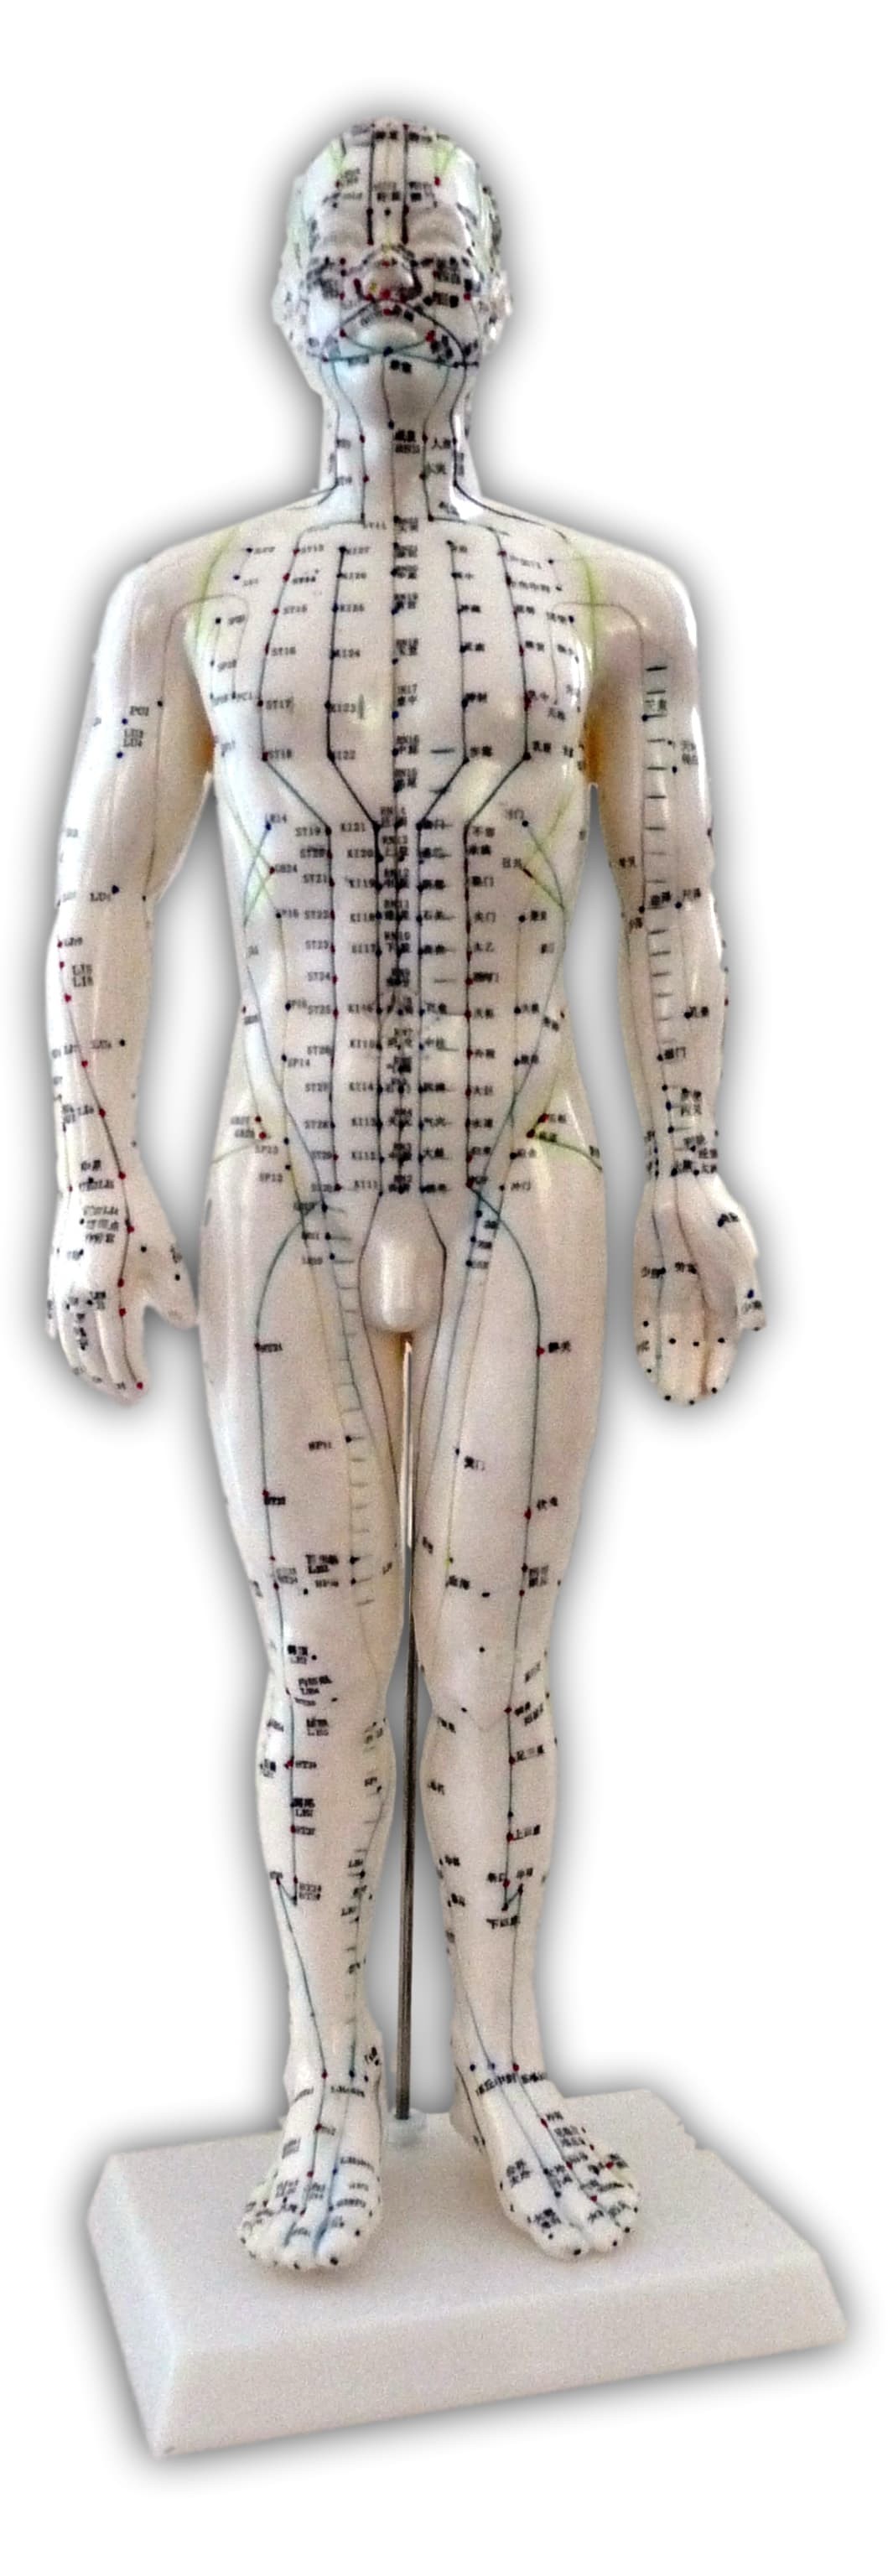 Mannequin d'acupuncture 50cm